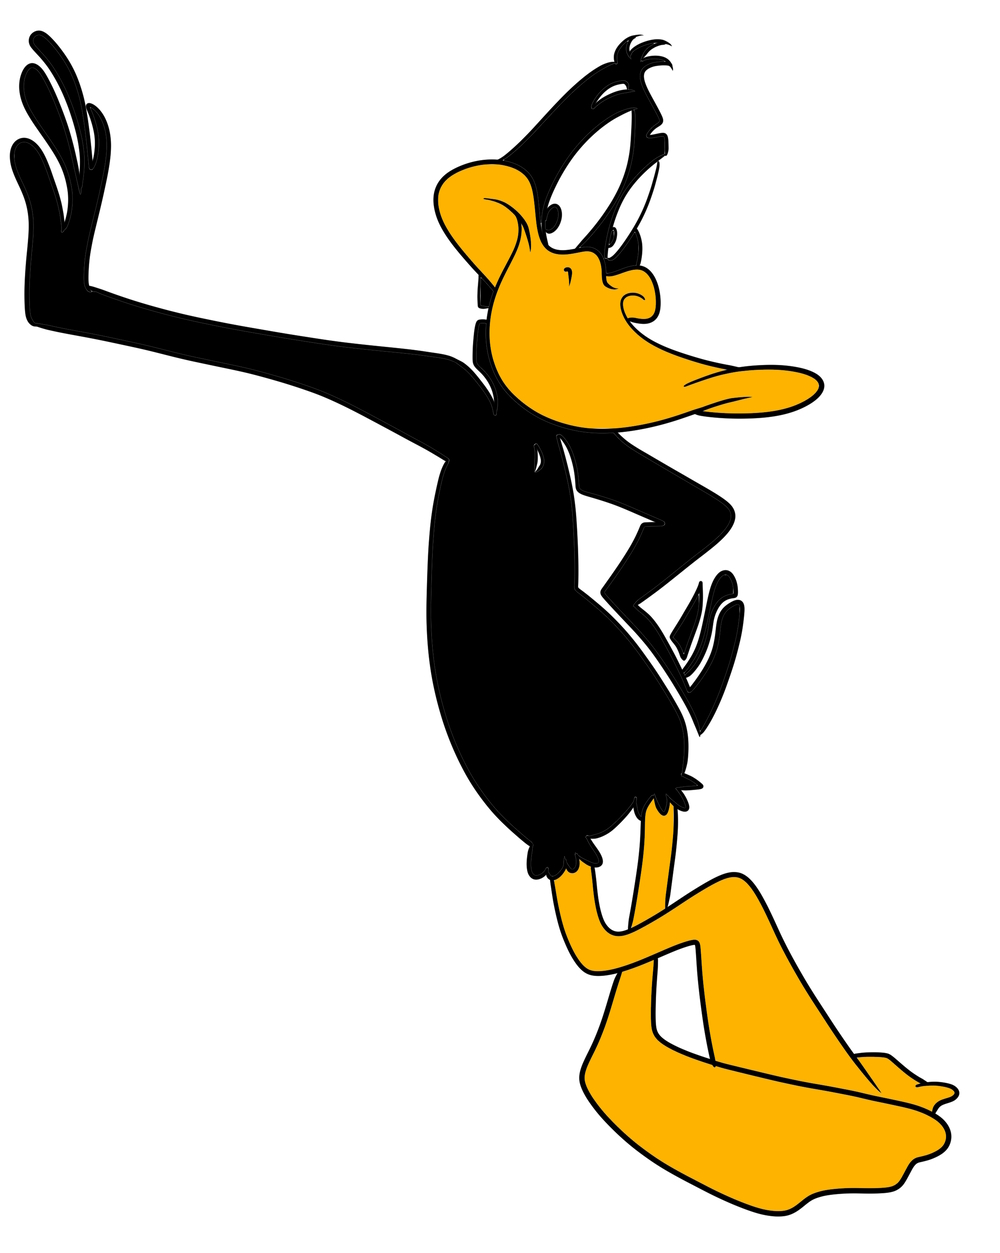 Daffy ankka